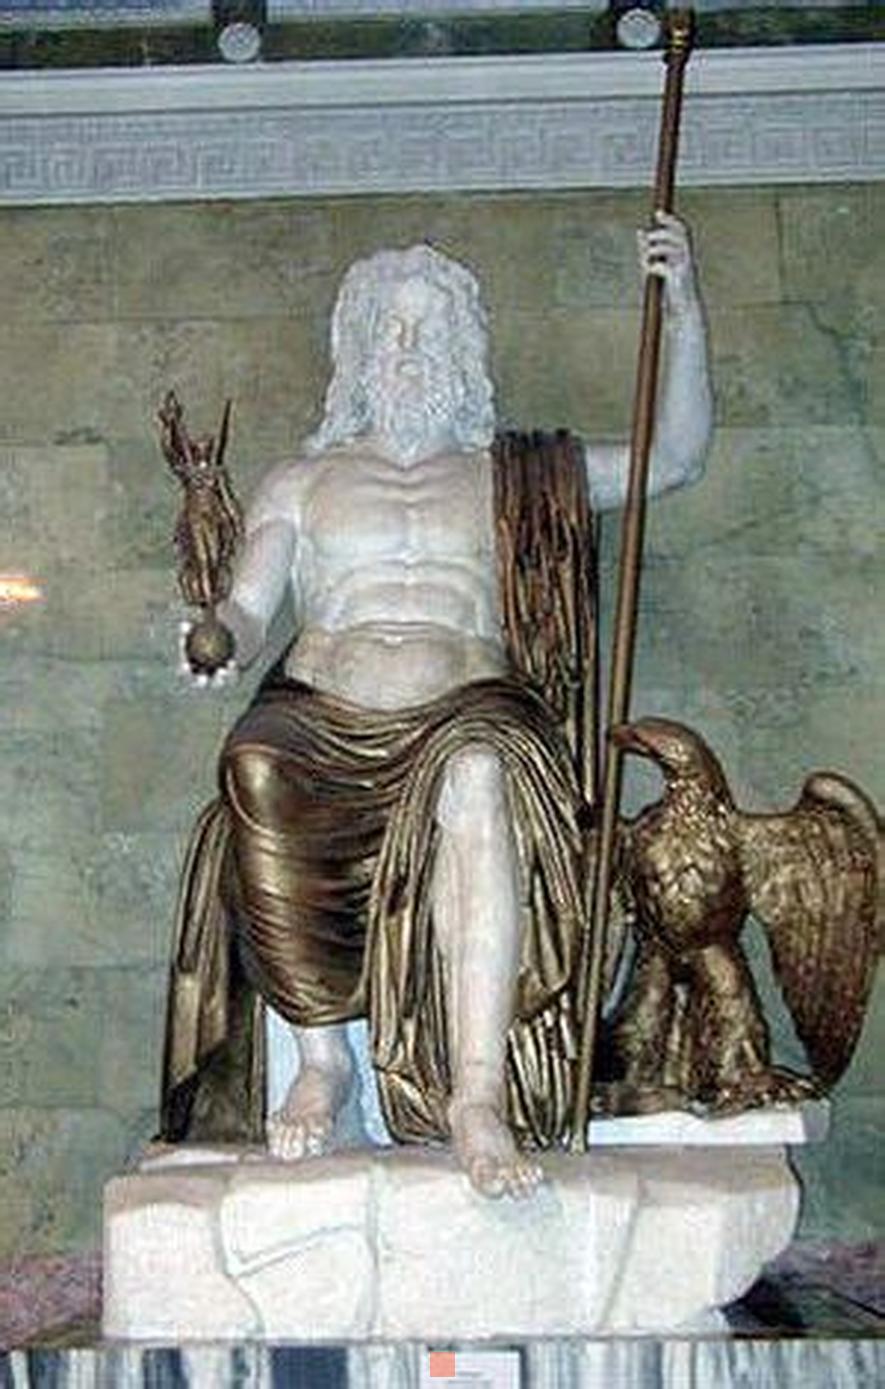 Zeus est le roi des dieux dans la mythologie grecque. Il est le frère de Hadès, de Poséidon, de Déméter, de Hestia et de Héra qui est également sa femme. C'est aussi le fils de Cronos et de Rhéa. Il est l'un des trois maîtres de l'Univers, avec ses frères Poséidon et Hadès. Il a le pouvoir de lancer des éclairs sur les hommes qui ne se montrent pas convenables envers les dieux.